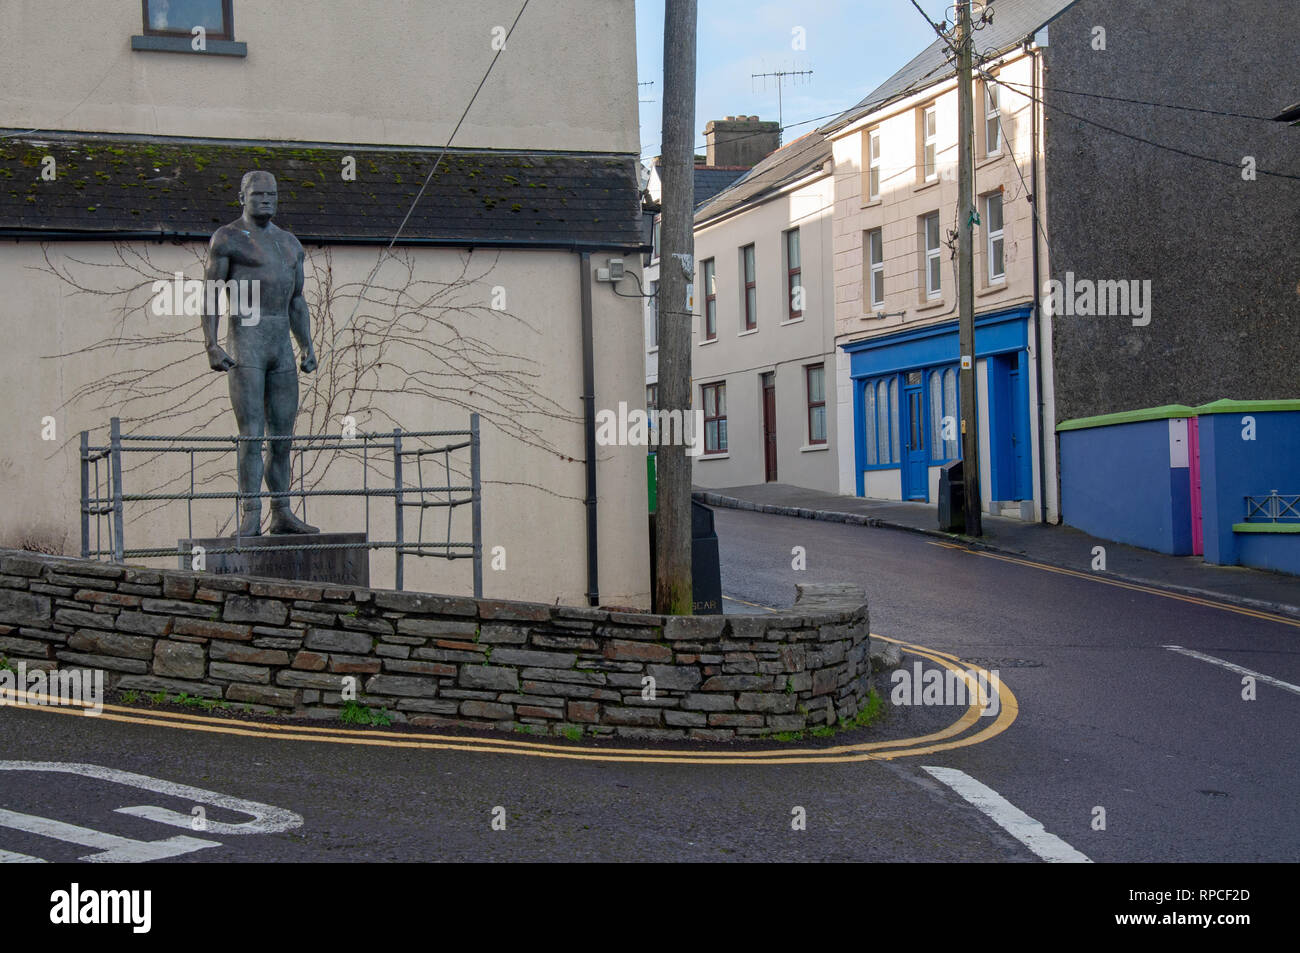 La statue de bronze de héros local et world champion de lutte 'Danno' O'Mahony, donne de l'autre côté de la rue principale de Ballydehob, West Cork, Irlande. Banque D'Images